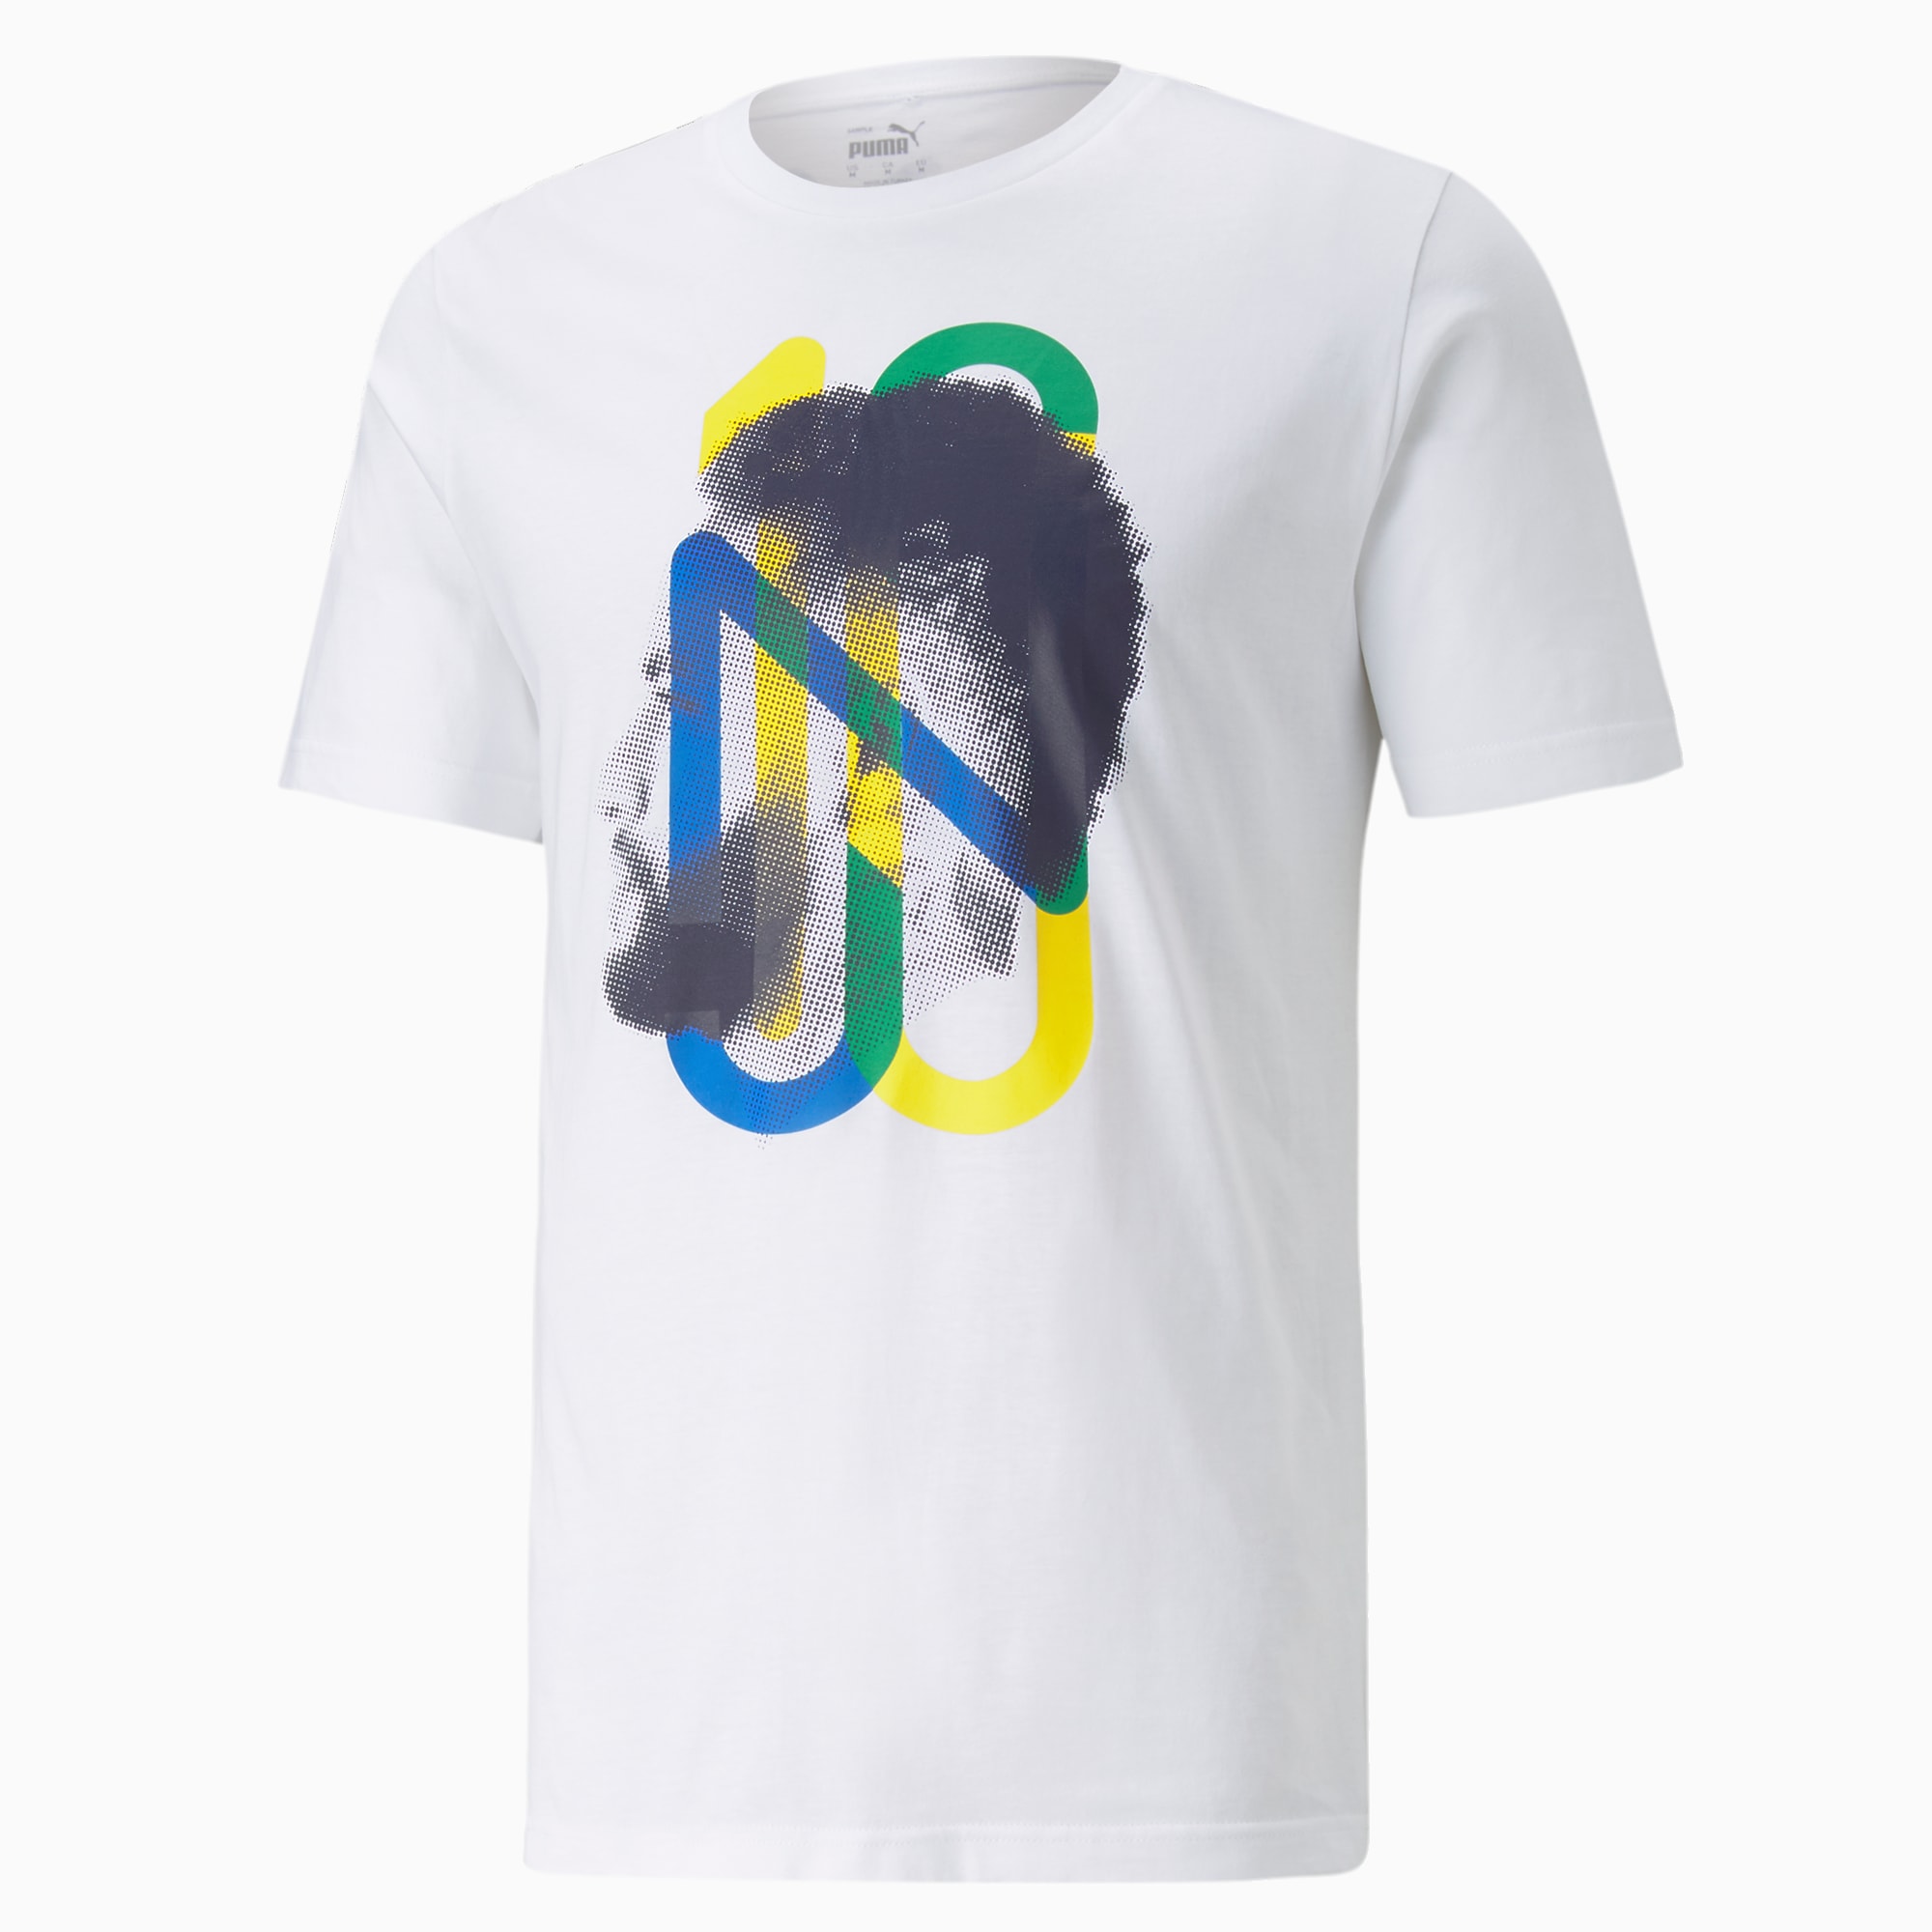 Njr 5 0 ネイマール Tシャツ Puma White プーマ ネイマール着用アイテム プーマ